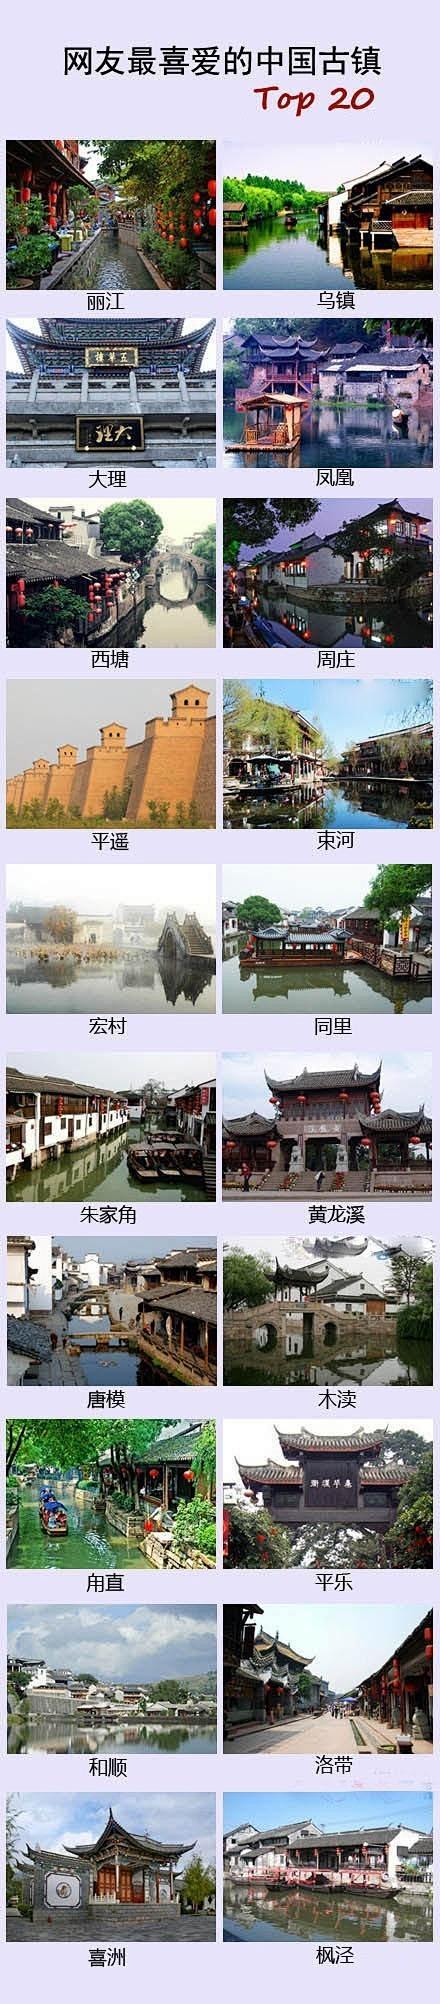 【中国最美的20个古镇】丽江、乌镇、大理...